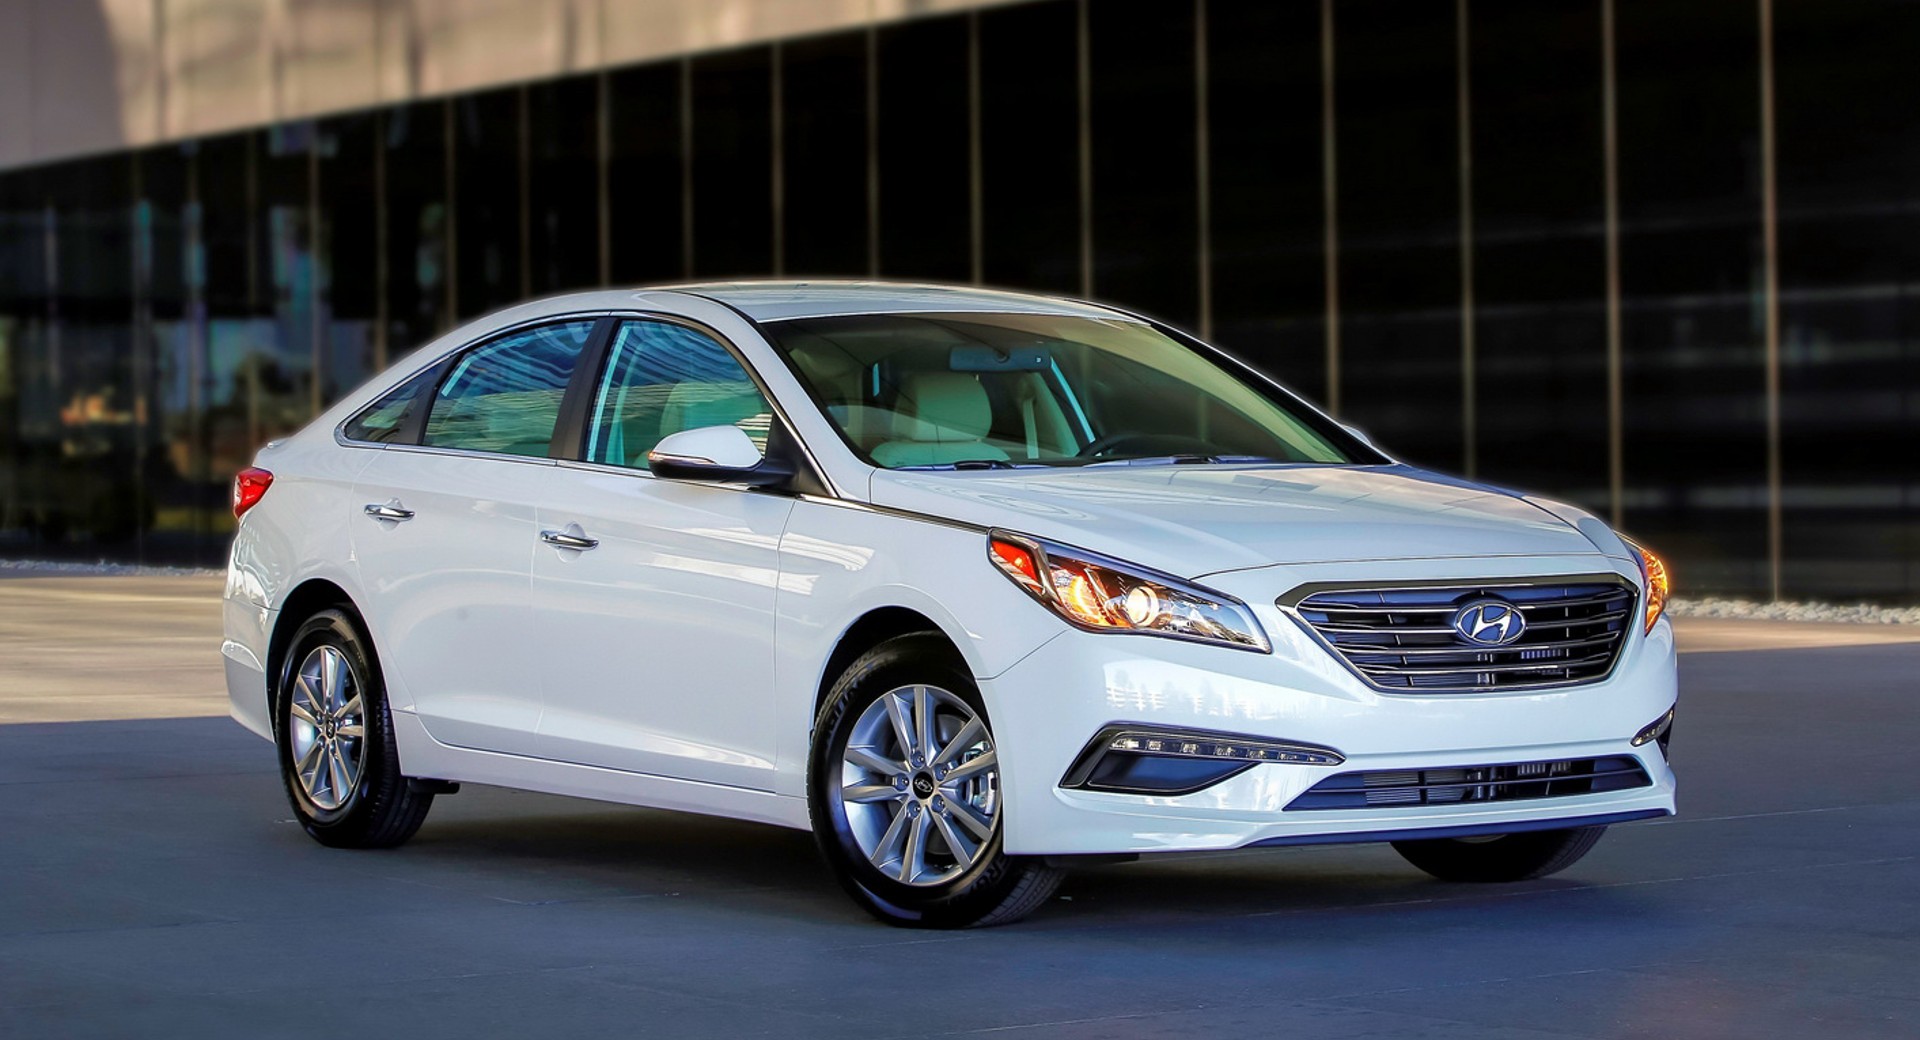 Hyundai réagit à l’augmentation spectaculaire des vols de voitures et prépare un nouveau kit de sécurité